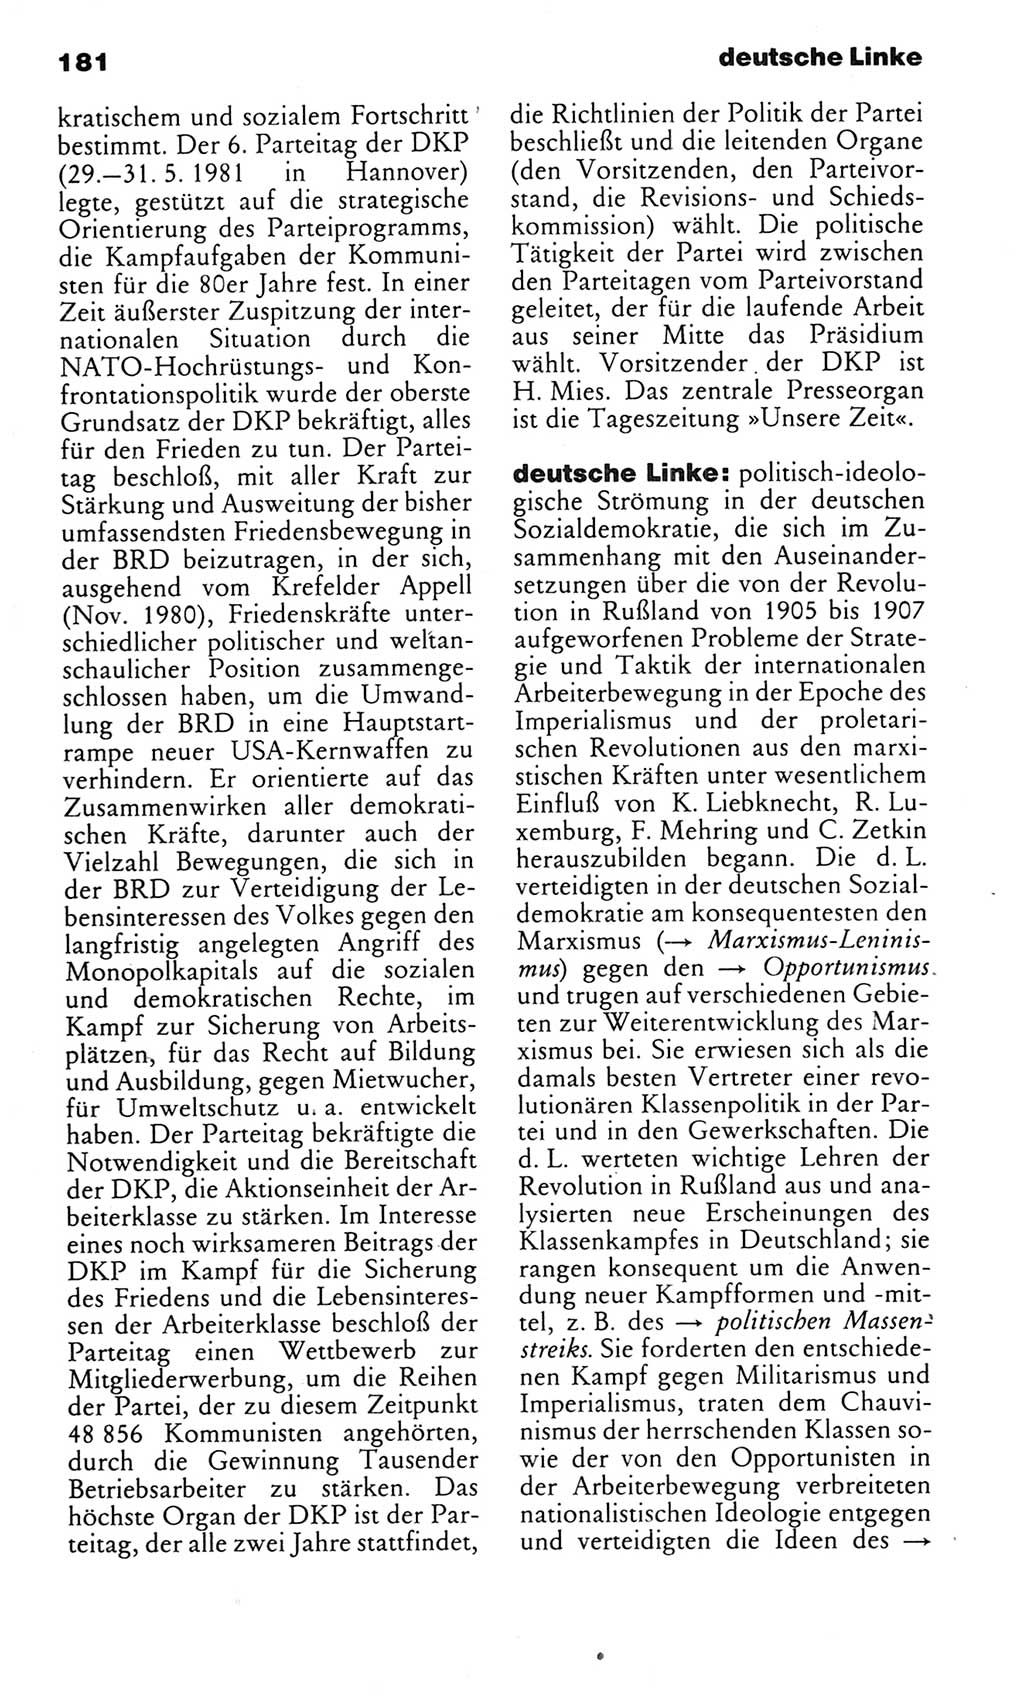 Kleines politisches Wörterbuch [Deutsche Demokratische Republik (DDR)] 1985, Seite 181 (Kl. pol. Wb. DDR 1985, S. 181)